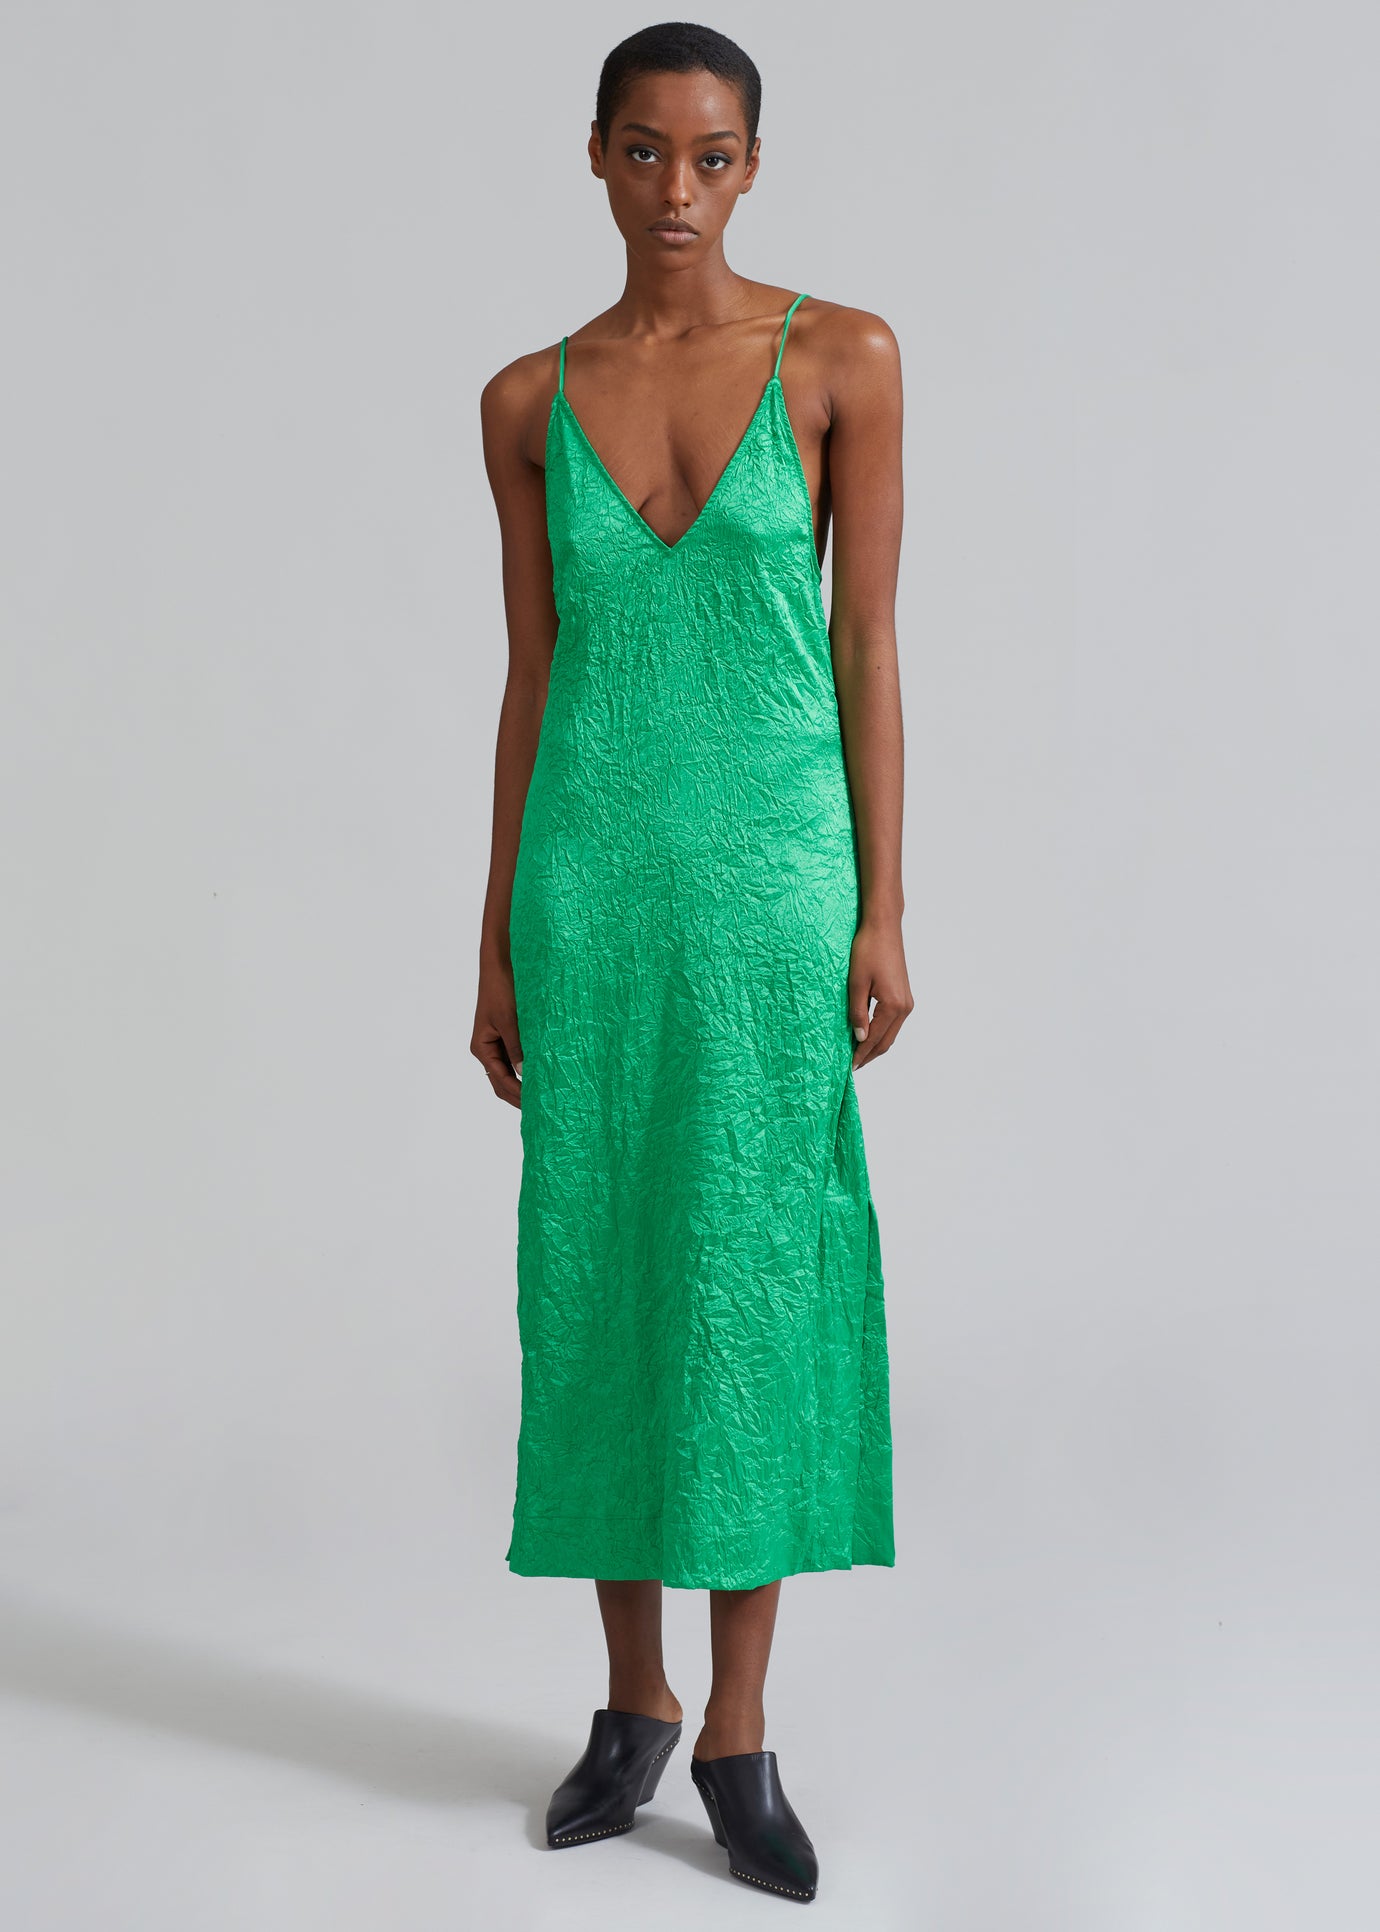 GANNI Crinkled Satin Slip Dress - Bright Green